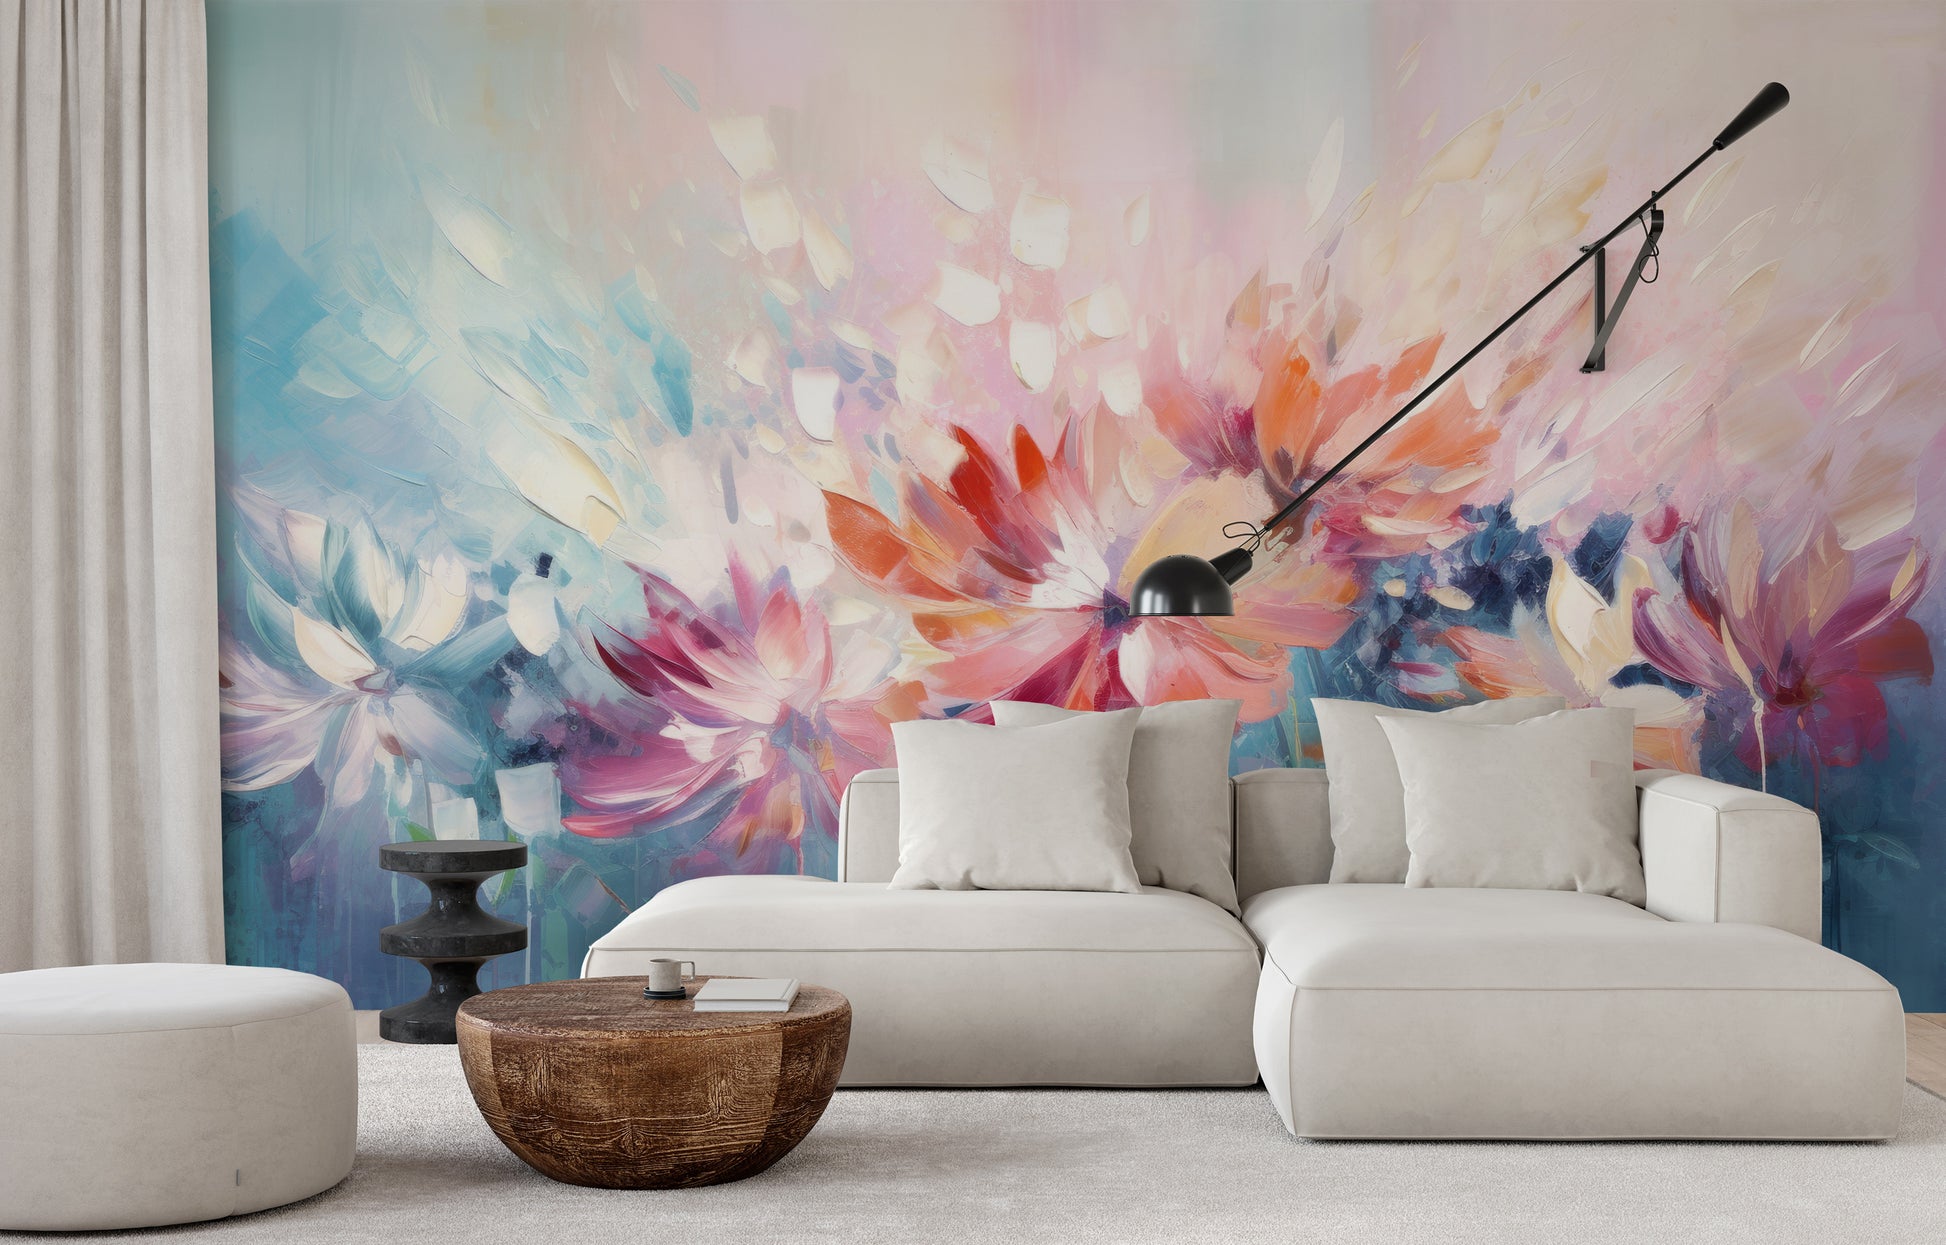 Zdjęcie prezentuje aranżację wnętrza z użyciem fototapety o nazwie Floral Watercolor Fantasy pokazanej w aranżacji wnętrza.